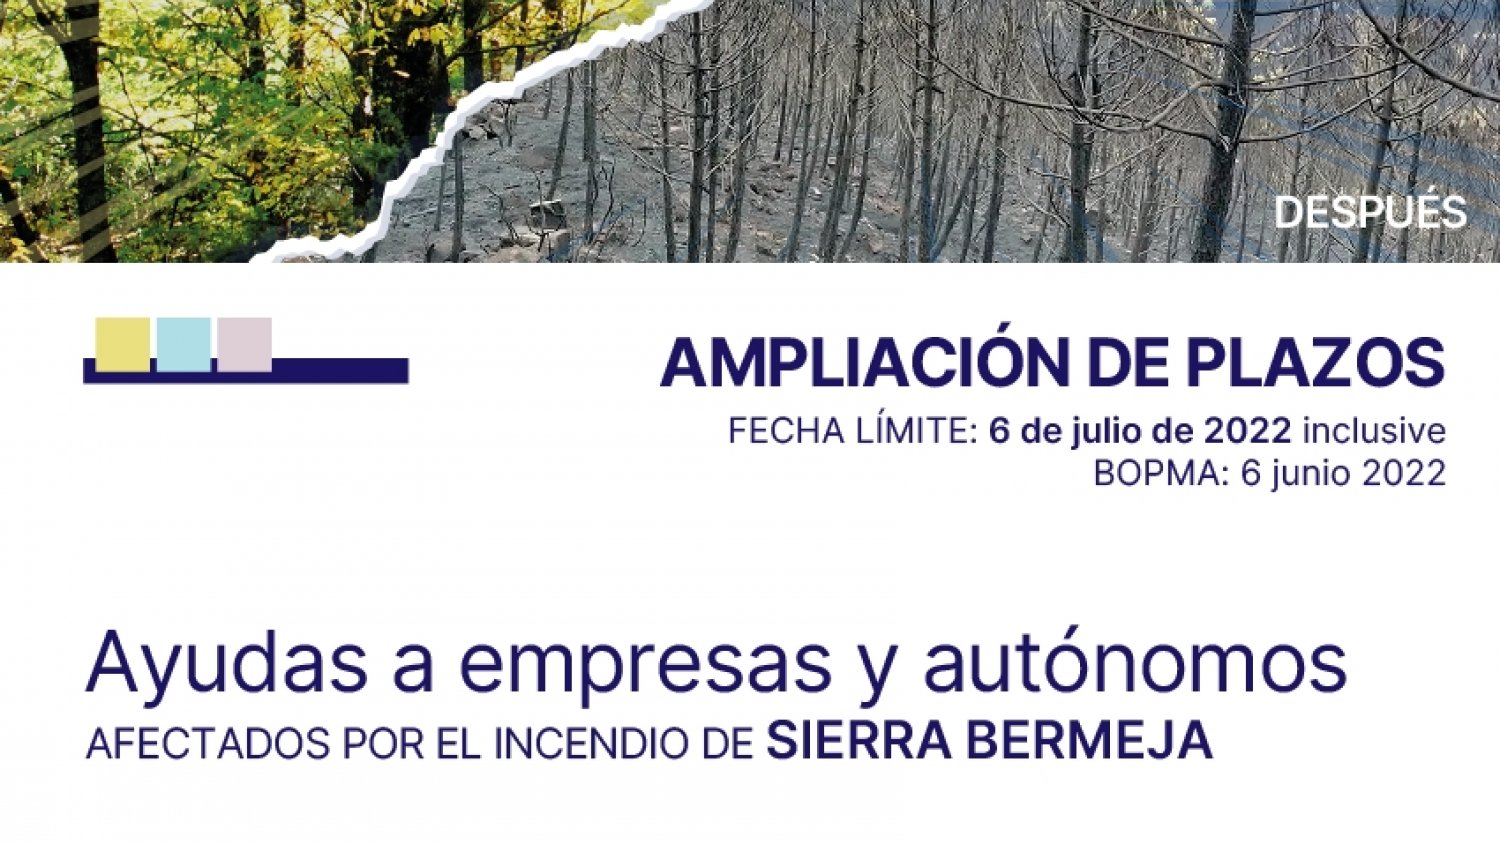 La Diputación amplía hasta el 6 de julio el plazo para solicitar ayudas por el incendio de Sierra Bermeja